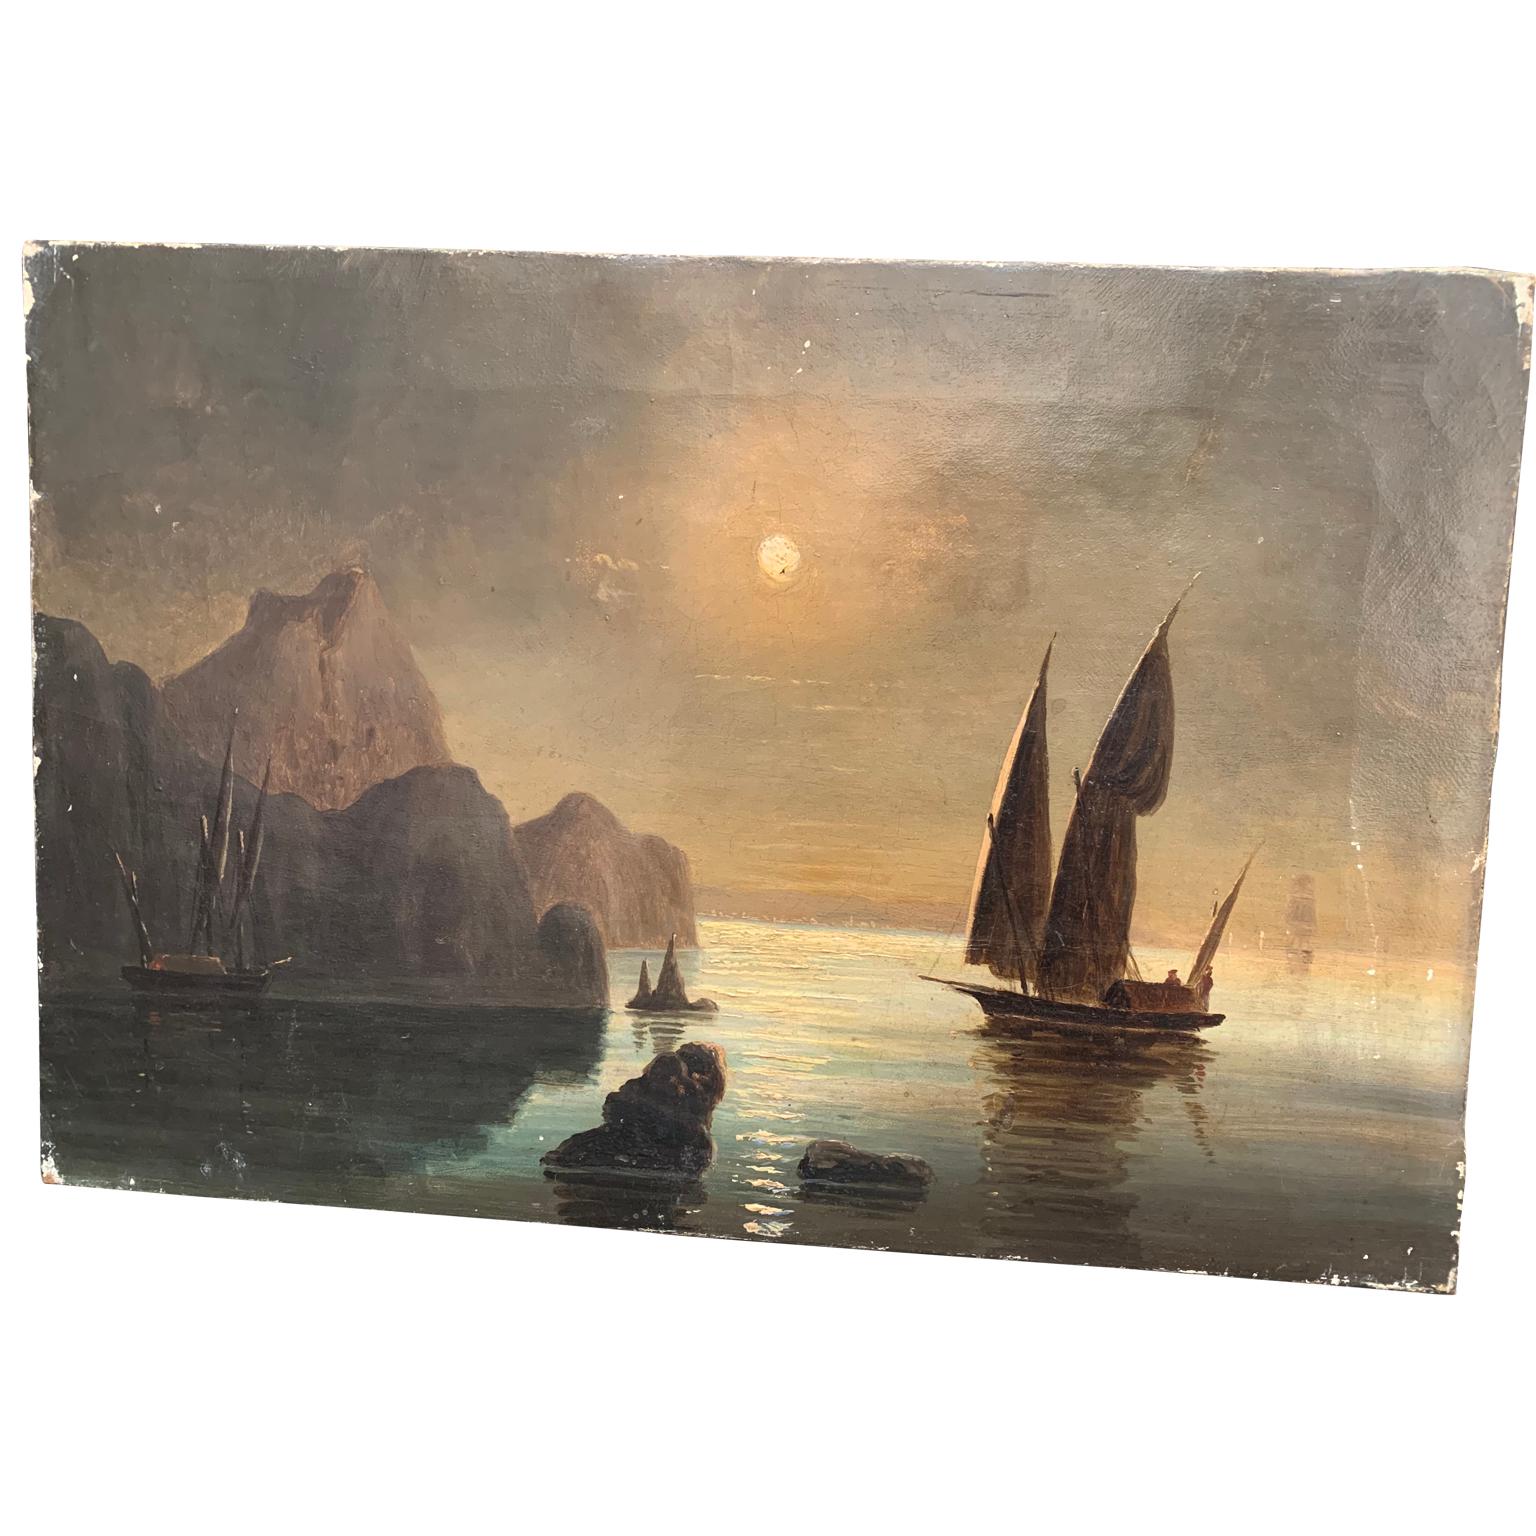 Peinture à l'huile du XIXe siècle représentant la côte suédoise avec un bateau à voile au clair de lune.
Cette œuvre d'art présente de petits dommages, mais elle a conservé sa patine et son aspect d'origine au fil des décennies, ce que nous et nos